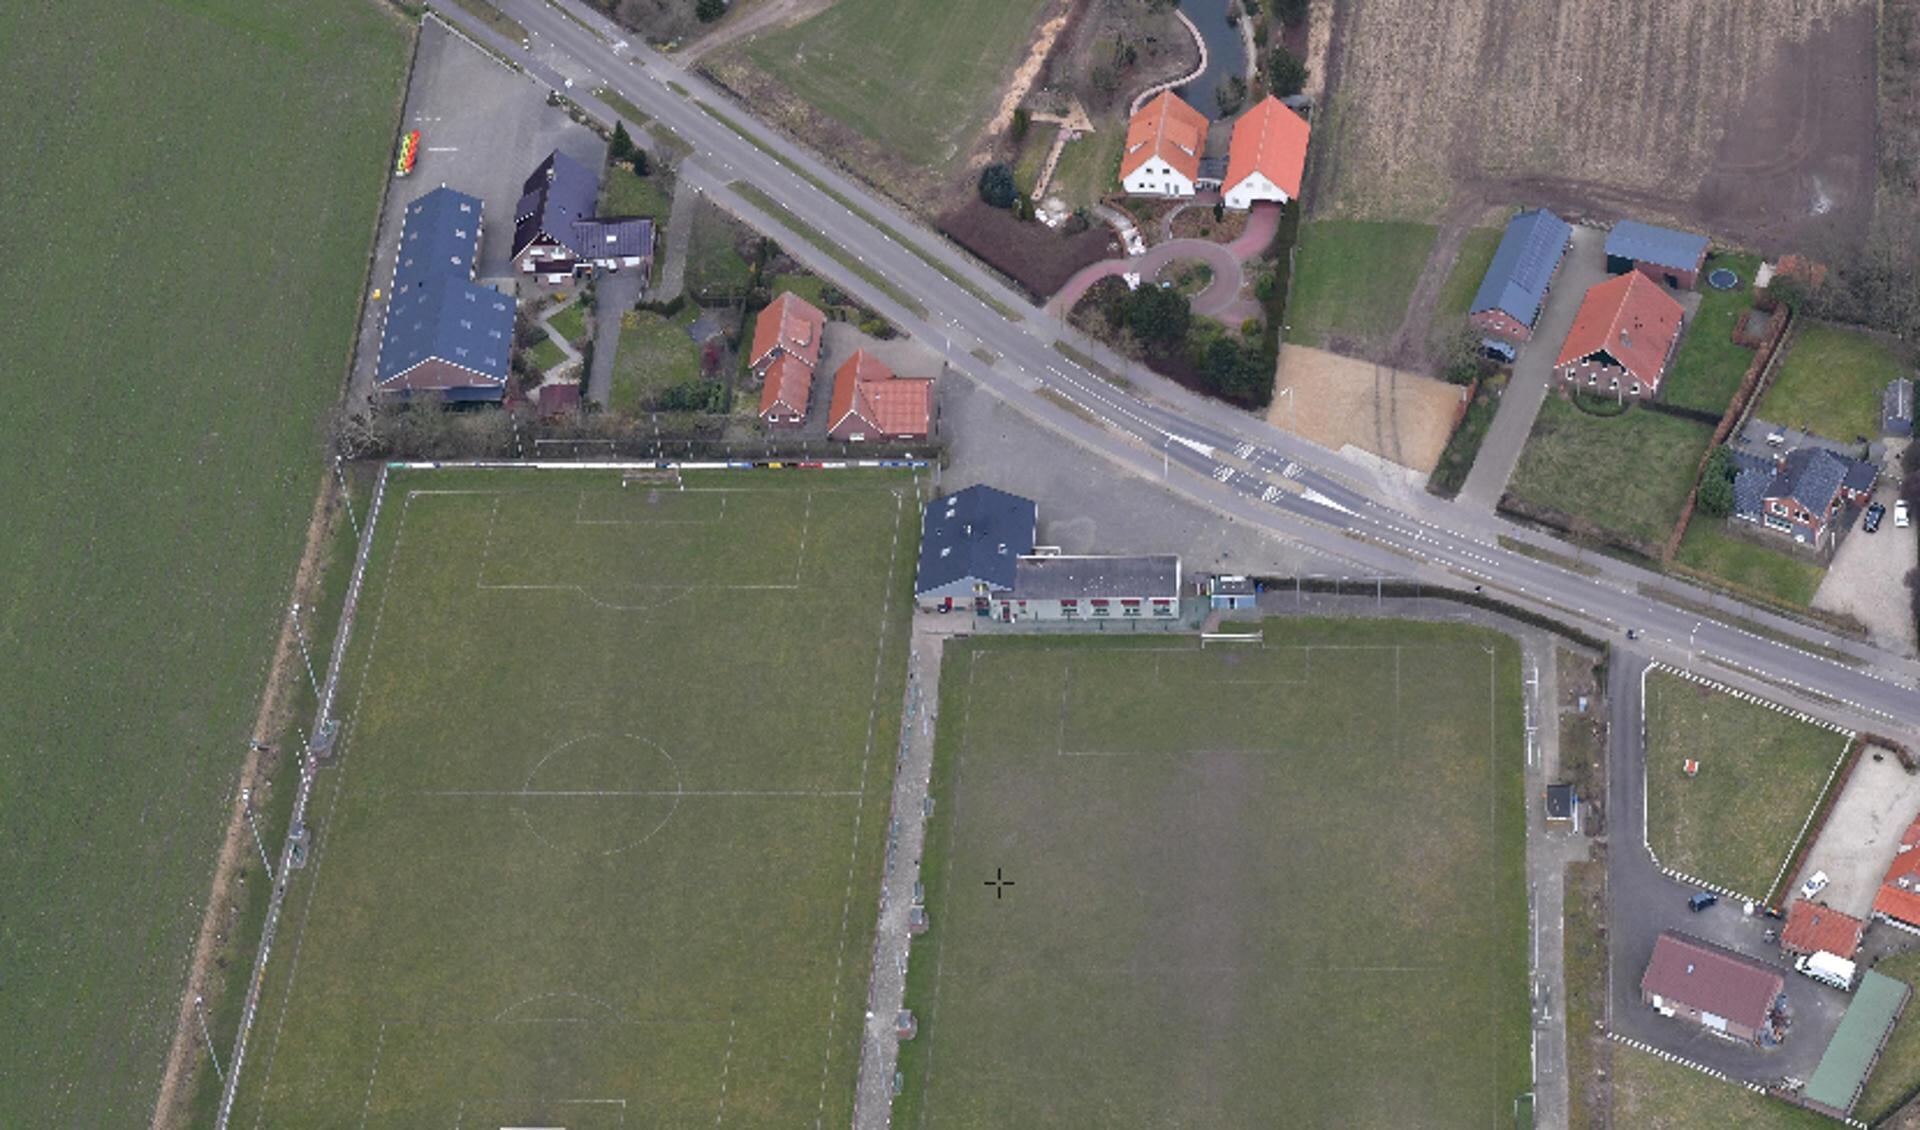 De voetbalvelden op Het Wilgenpark in Groenlo zullen plaatsmaken voor visvijvers.